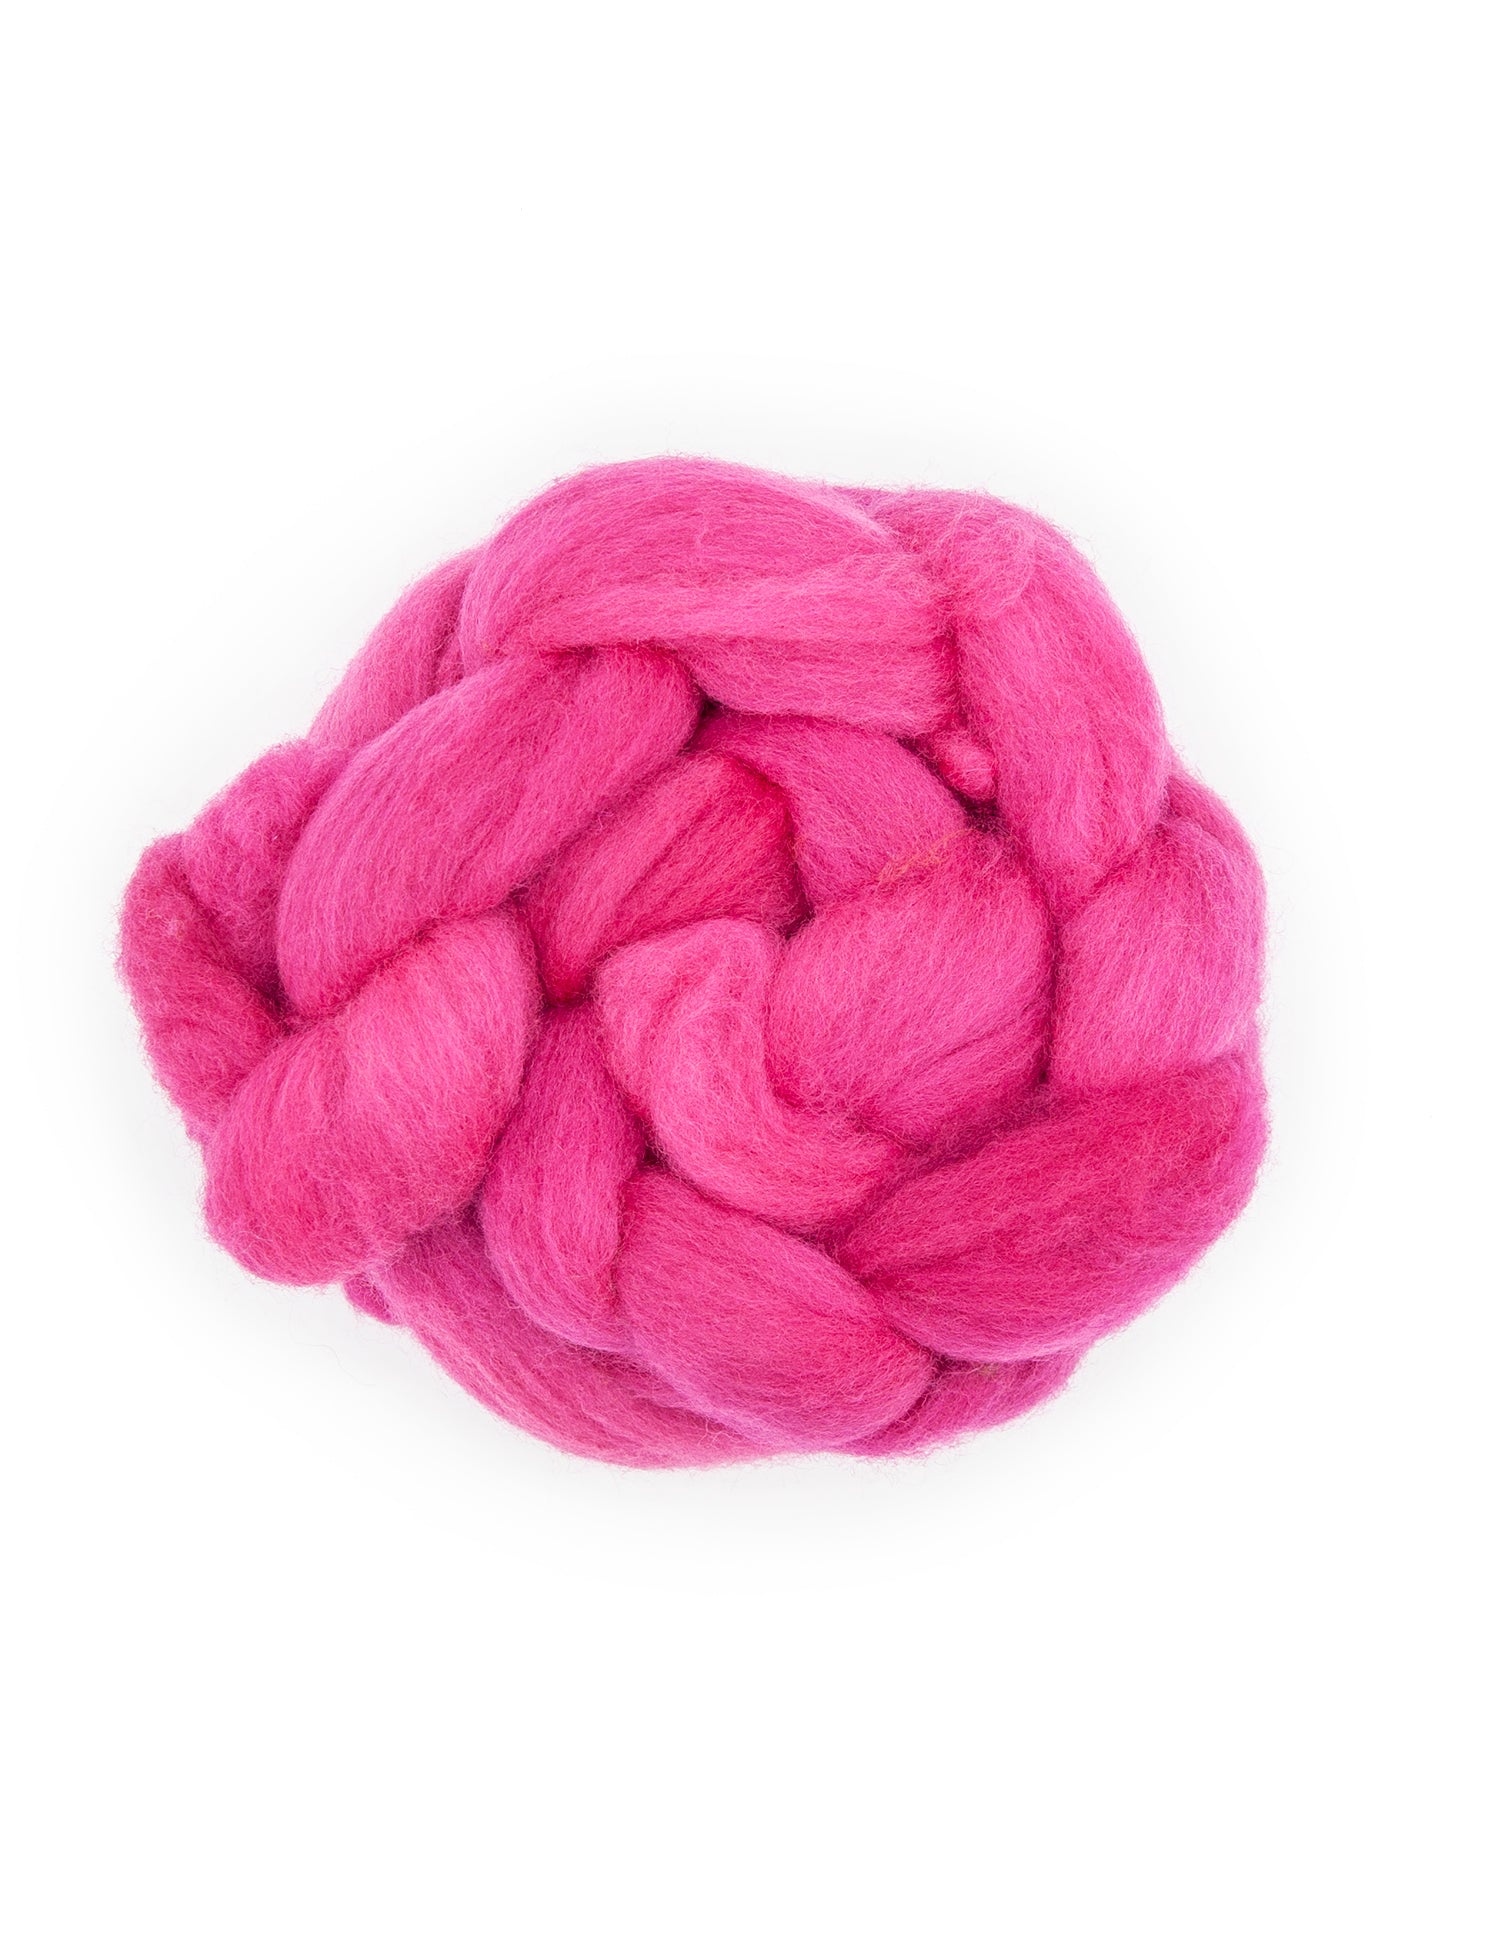 Polwarth Wool Roving (4oz) – Woolgatherings